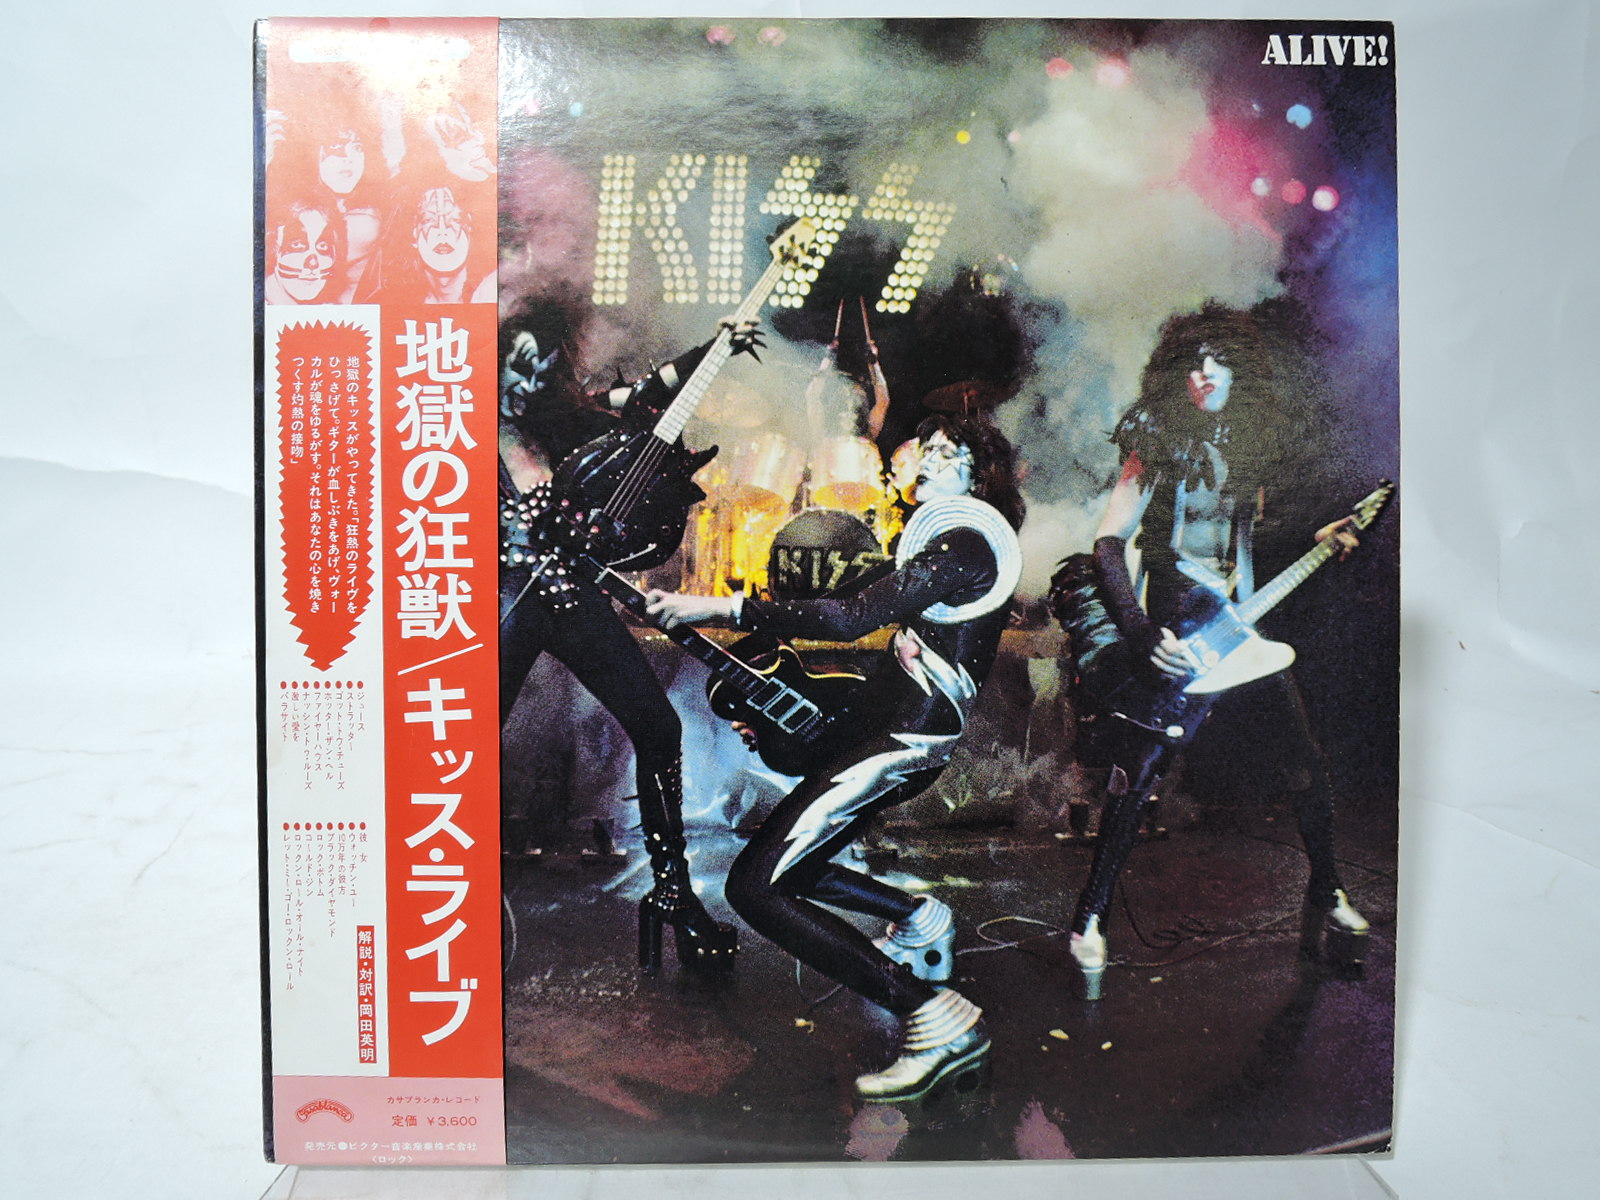 KISS キッス LP レコード アルバム アライブⅡ 地獄の狂獣 地獄のさけび-